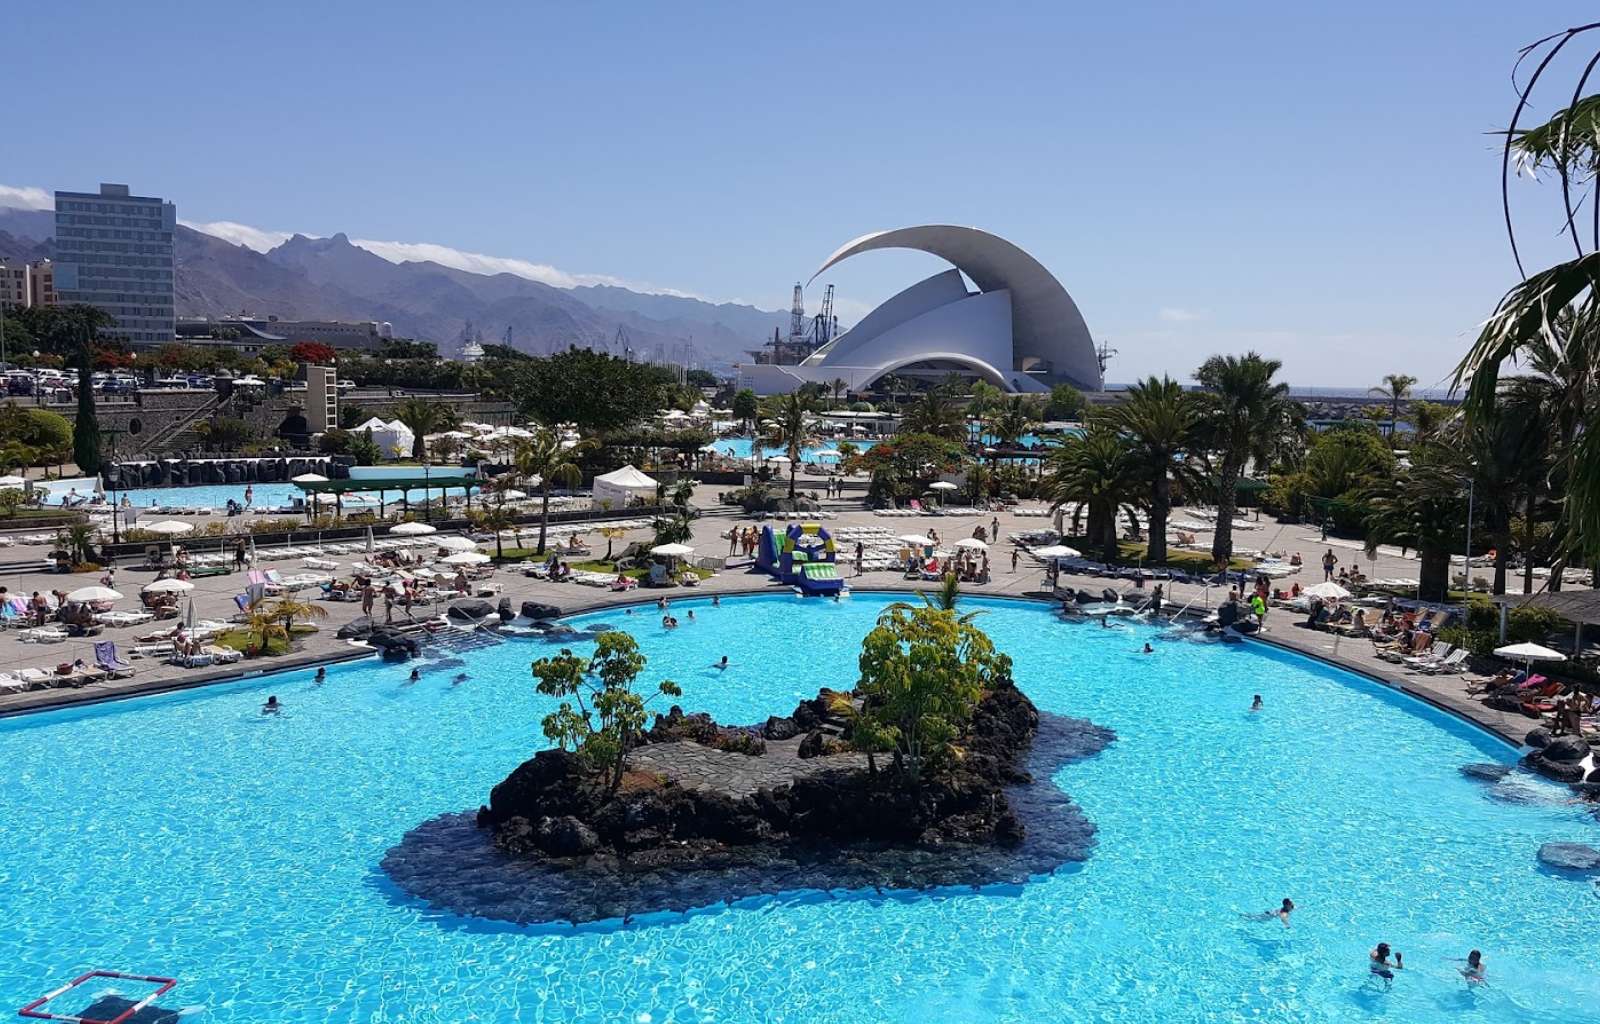 Vistas del Parque Marítimo de Santa Cruz de Tenerife con el Auditorio de fondo.